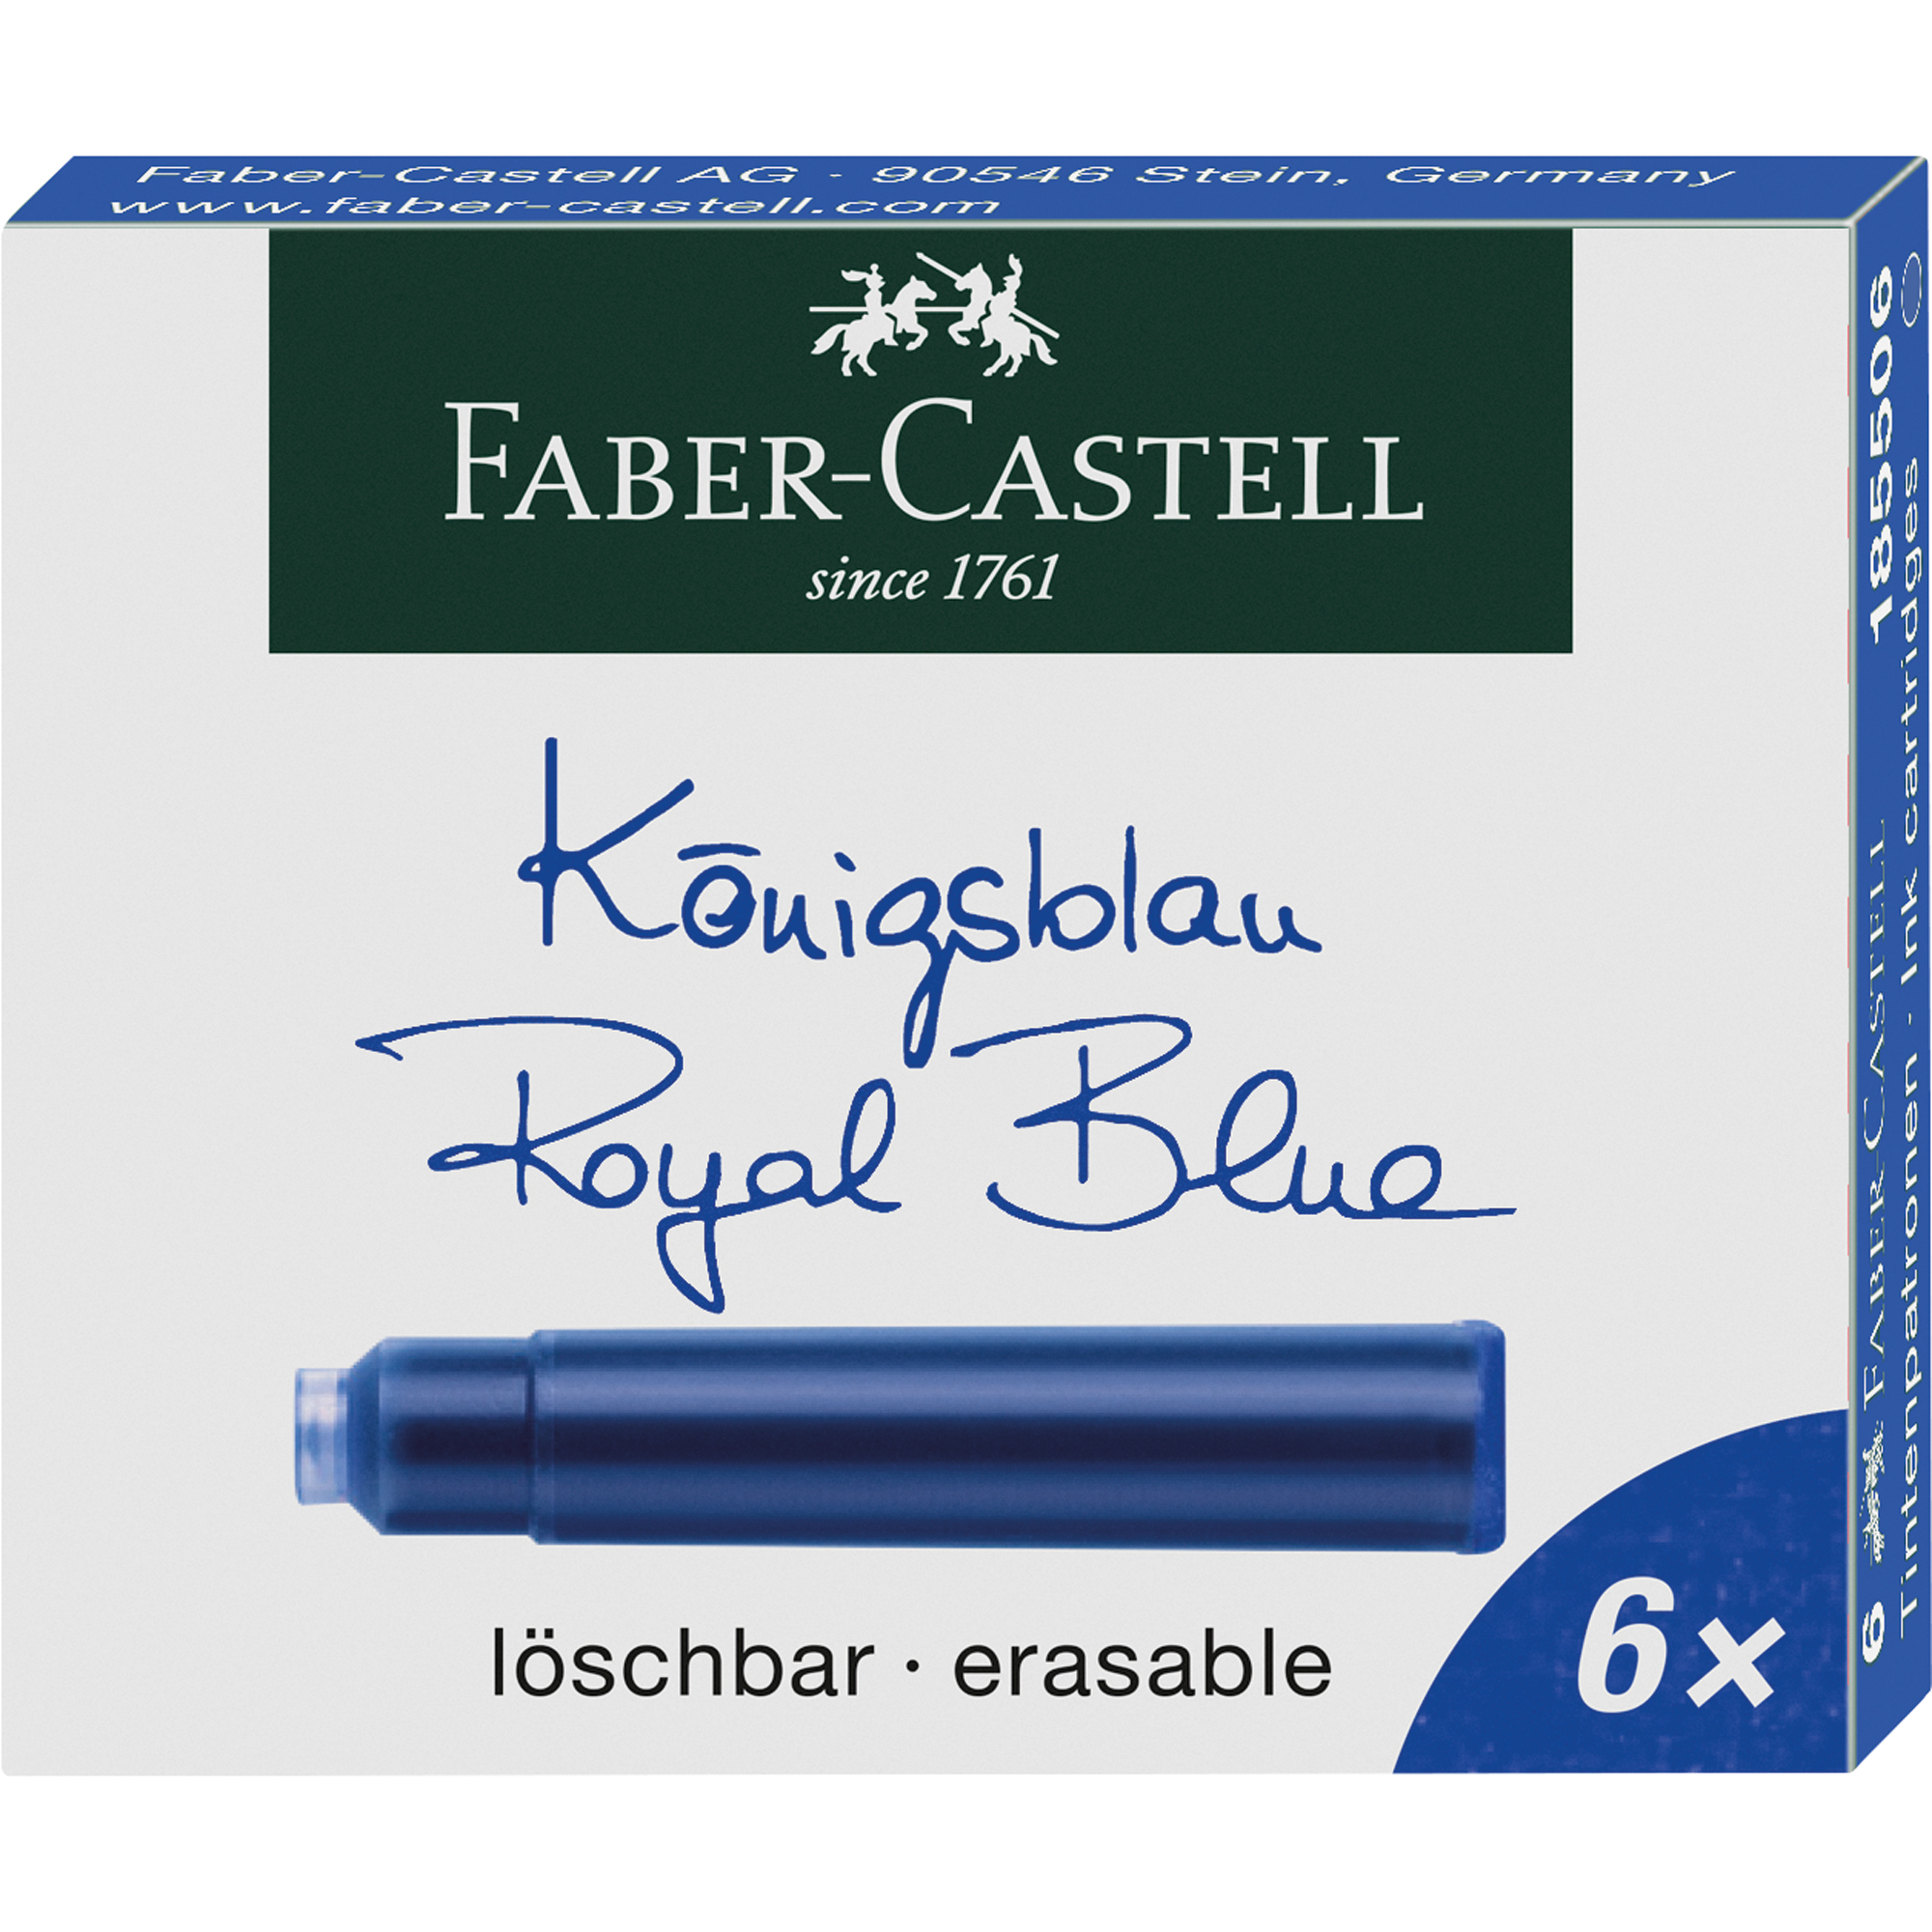 Faber-Castell Tintenpatrone Standard löschbar